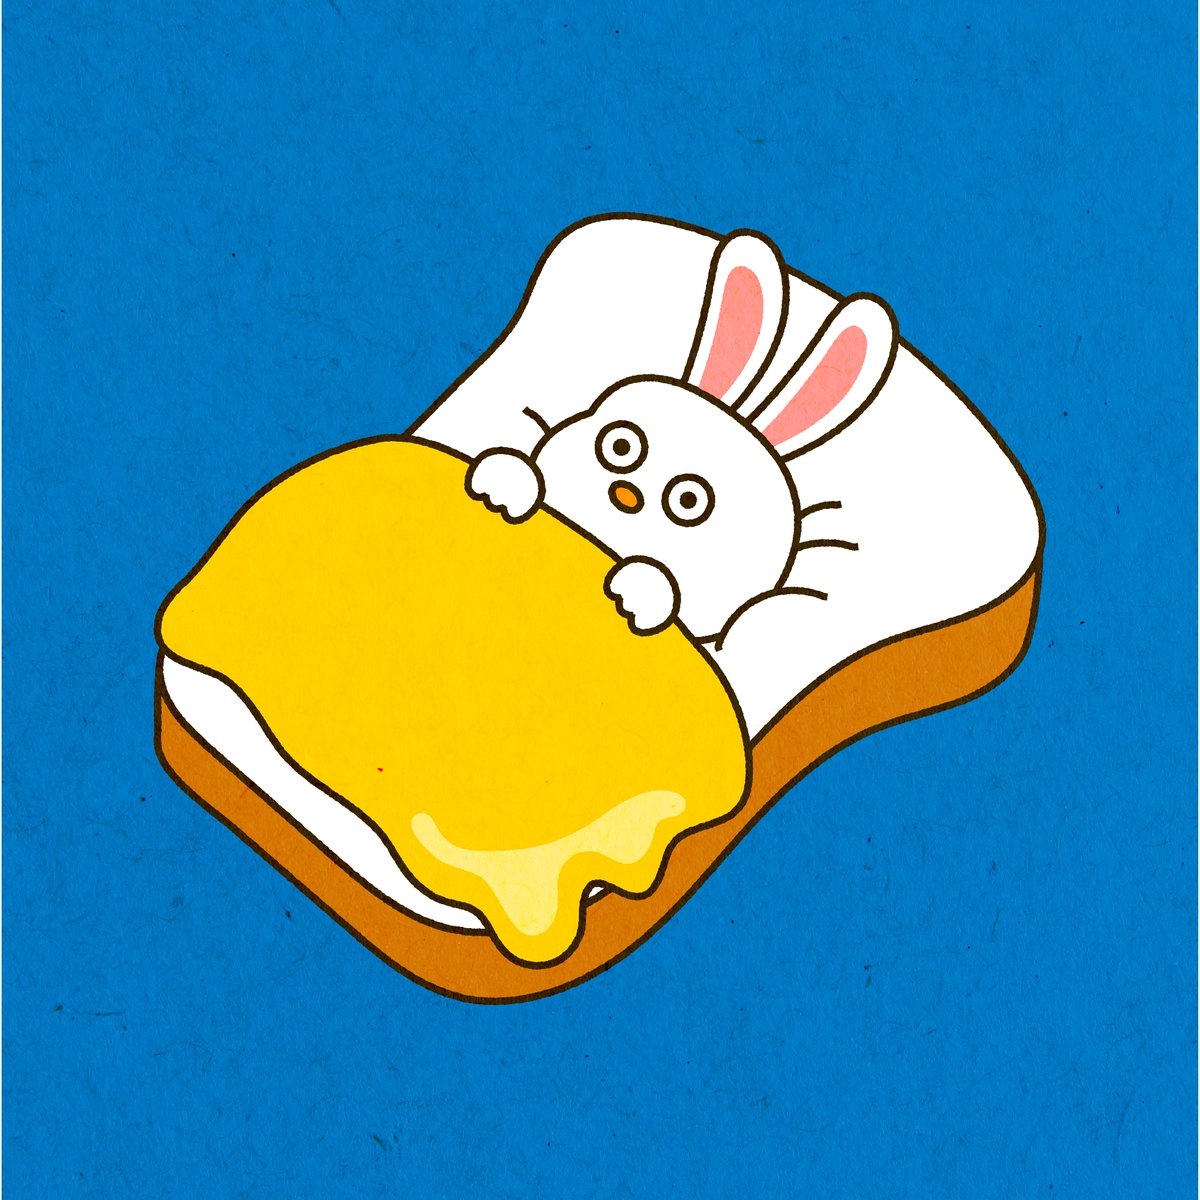 「あこがれの食パンチーズベッド。フワフワすぎて眠れないうさぎくん。 #イラスト #」|にちにち。のイラスト